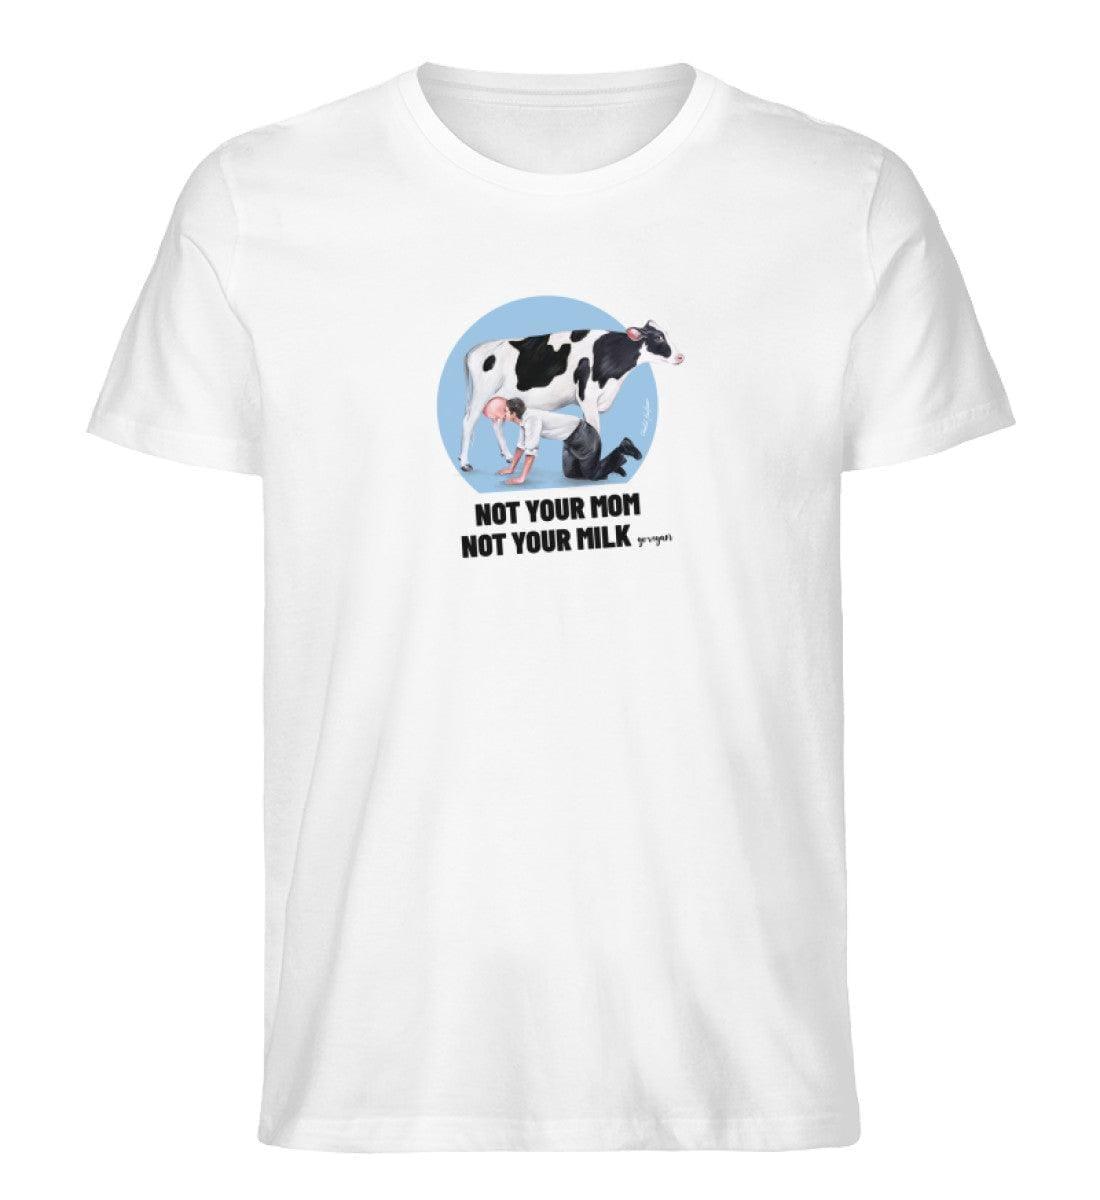 Not your Mom [Chantal Kaufmann] - Unisex Organic Shirt Rocker T-Shirt ST/ST Shirtee Weiß S 